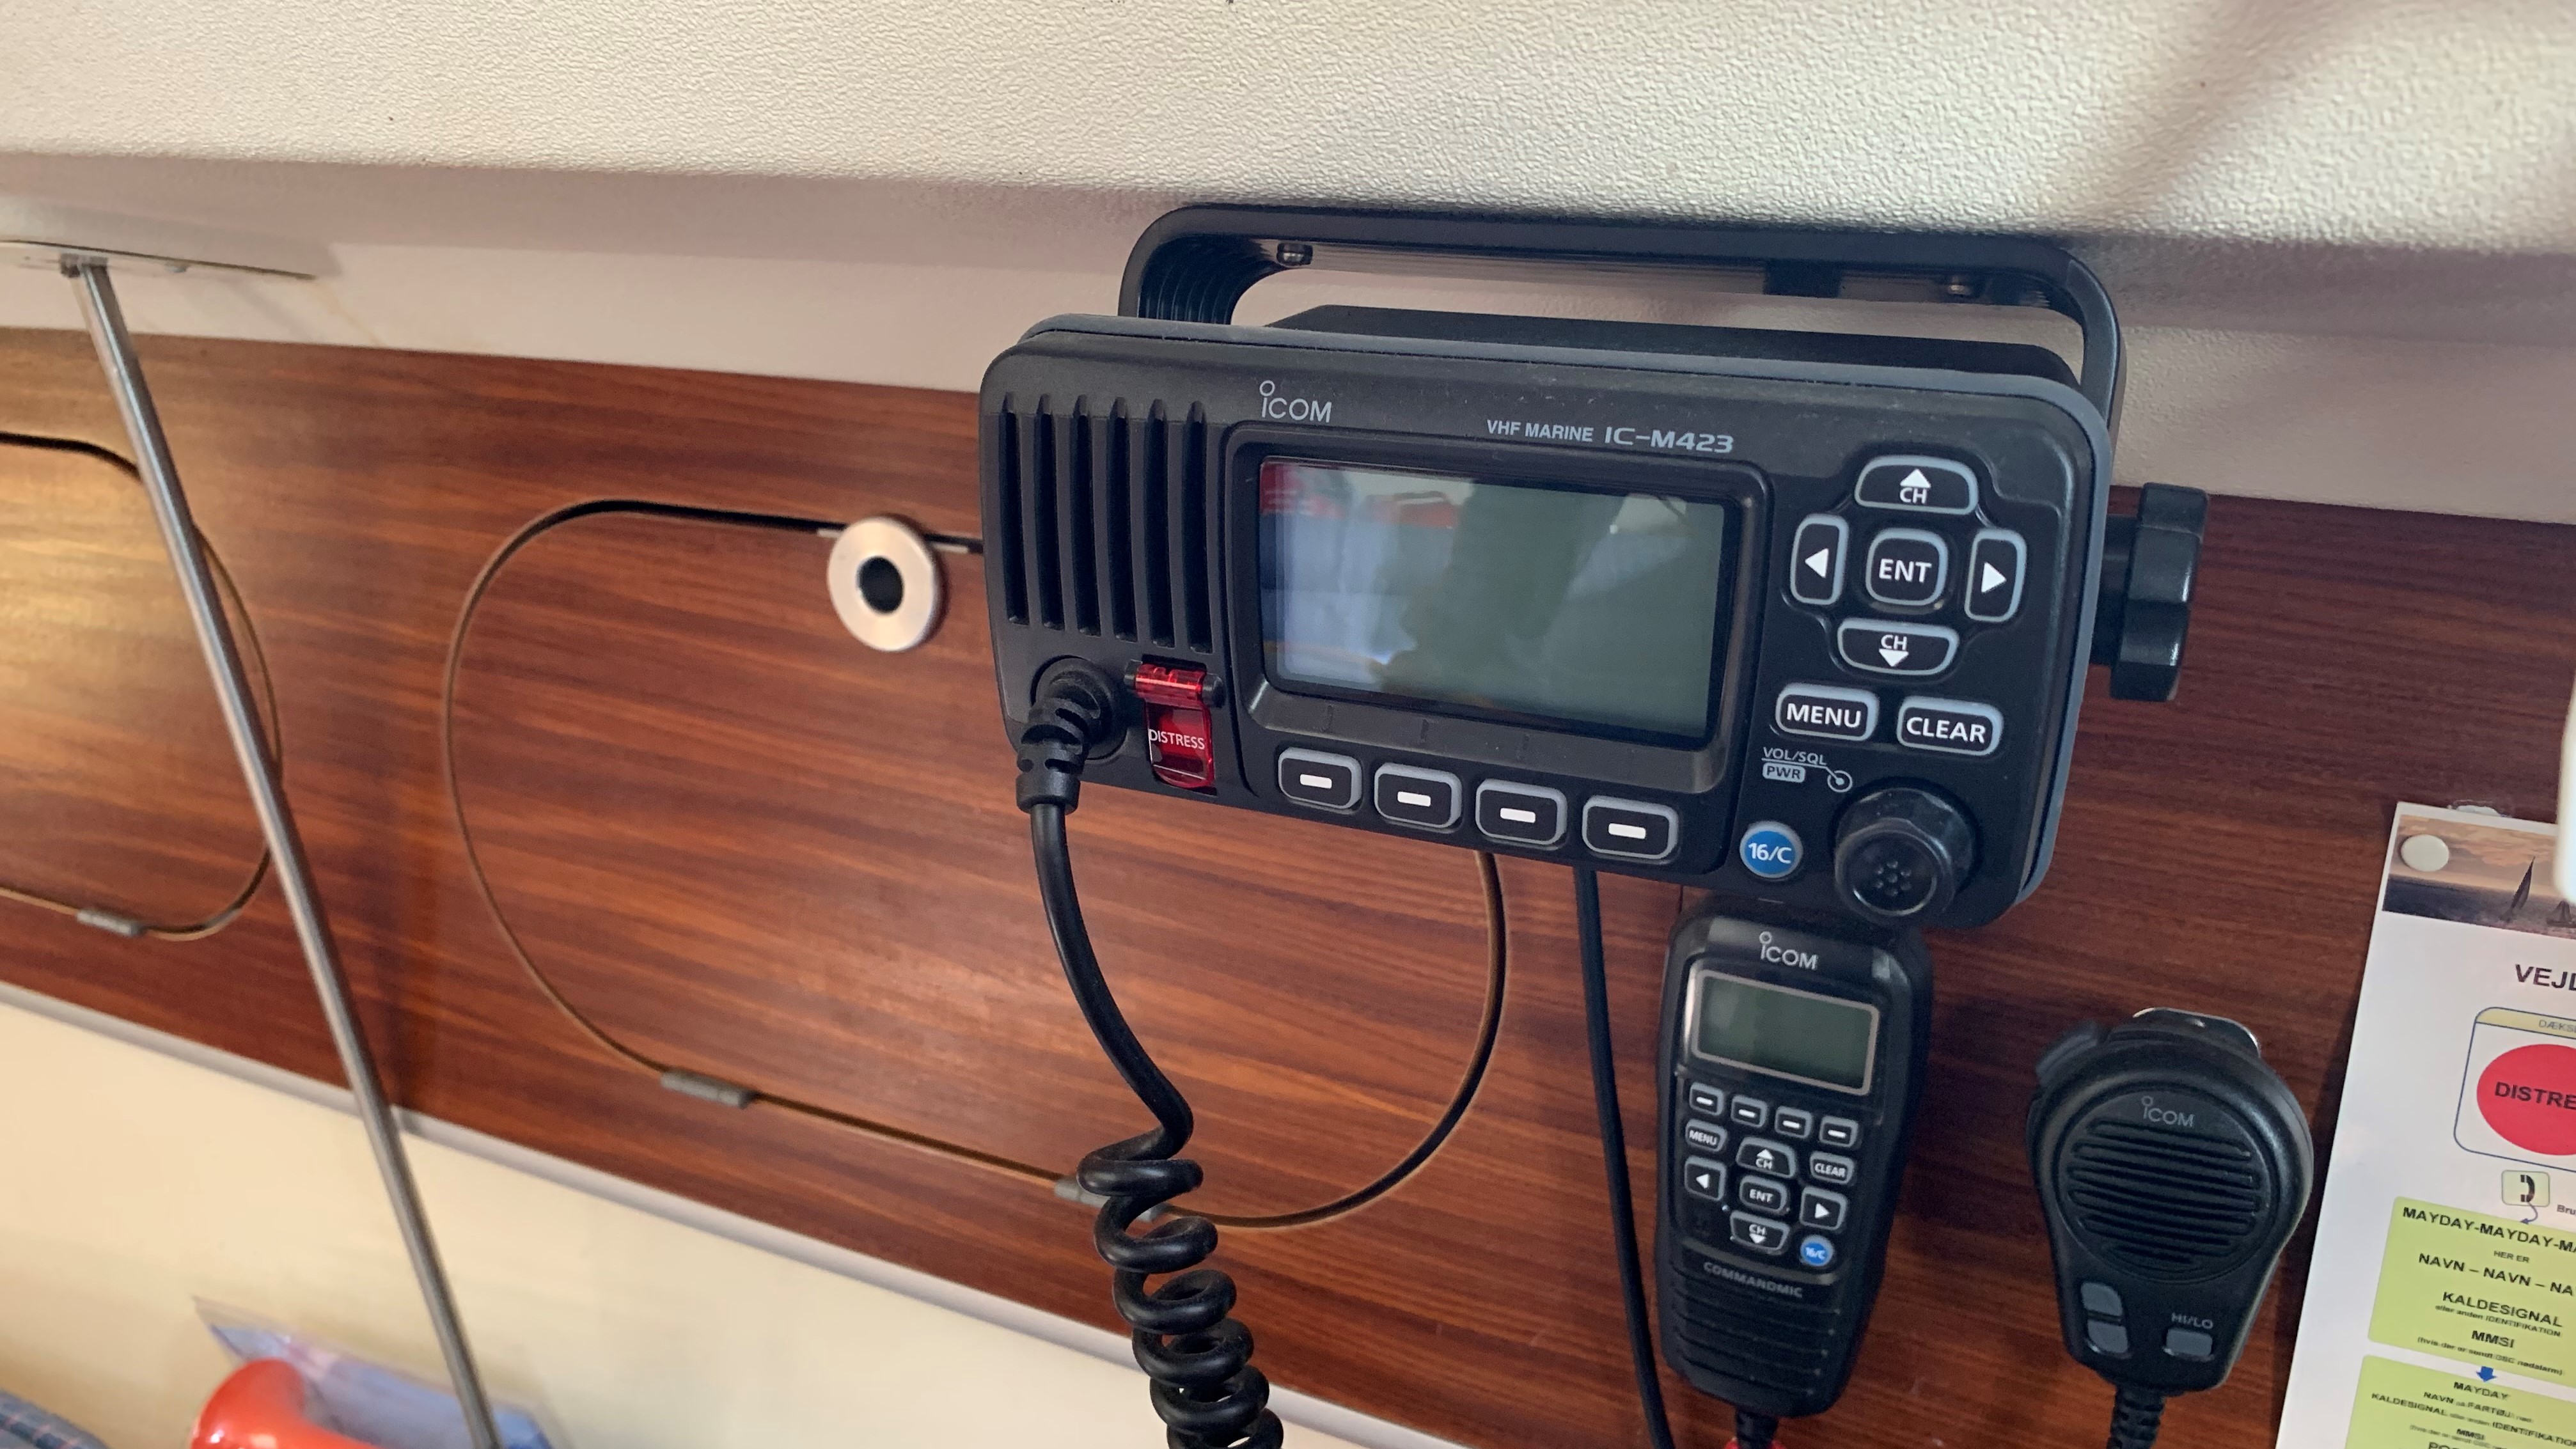 VHF radio med "Distress" knap på forsiden